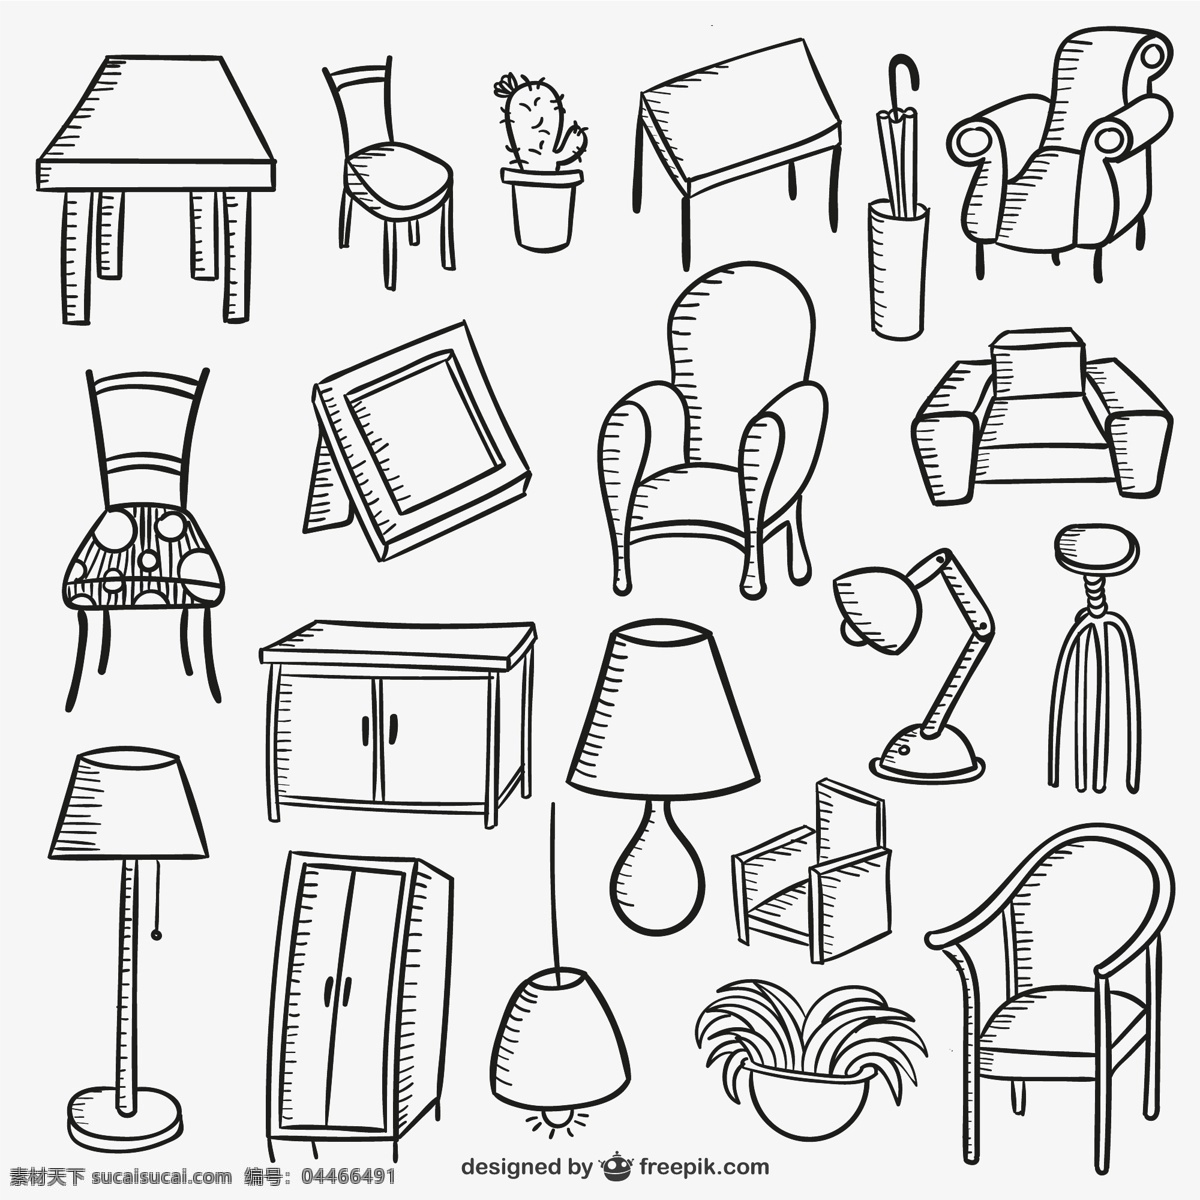 日常家具收藏 房子 家庭 家具 灯具 素描 椅子 沙发 抽纱 衣柜 收藏